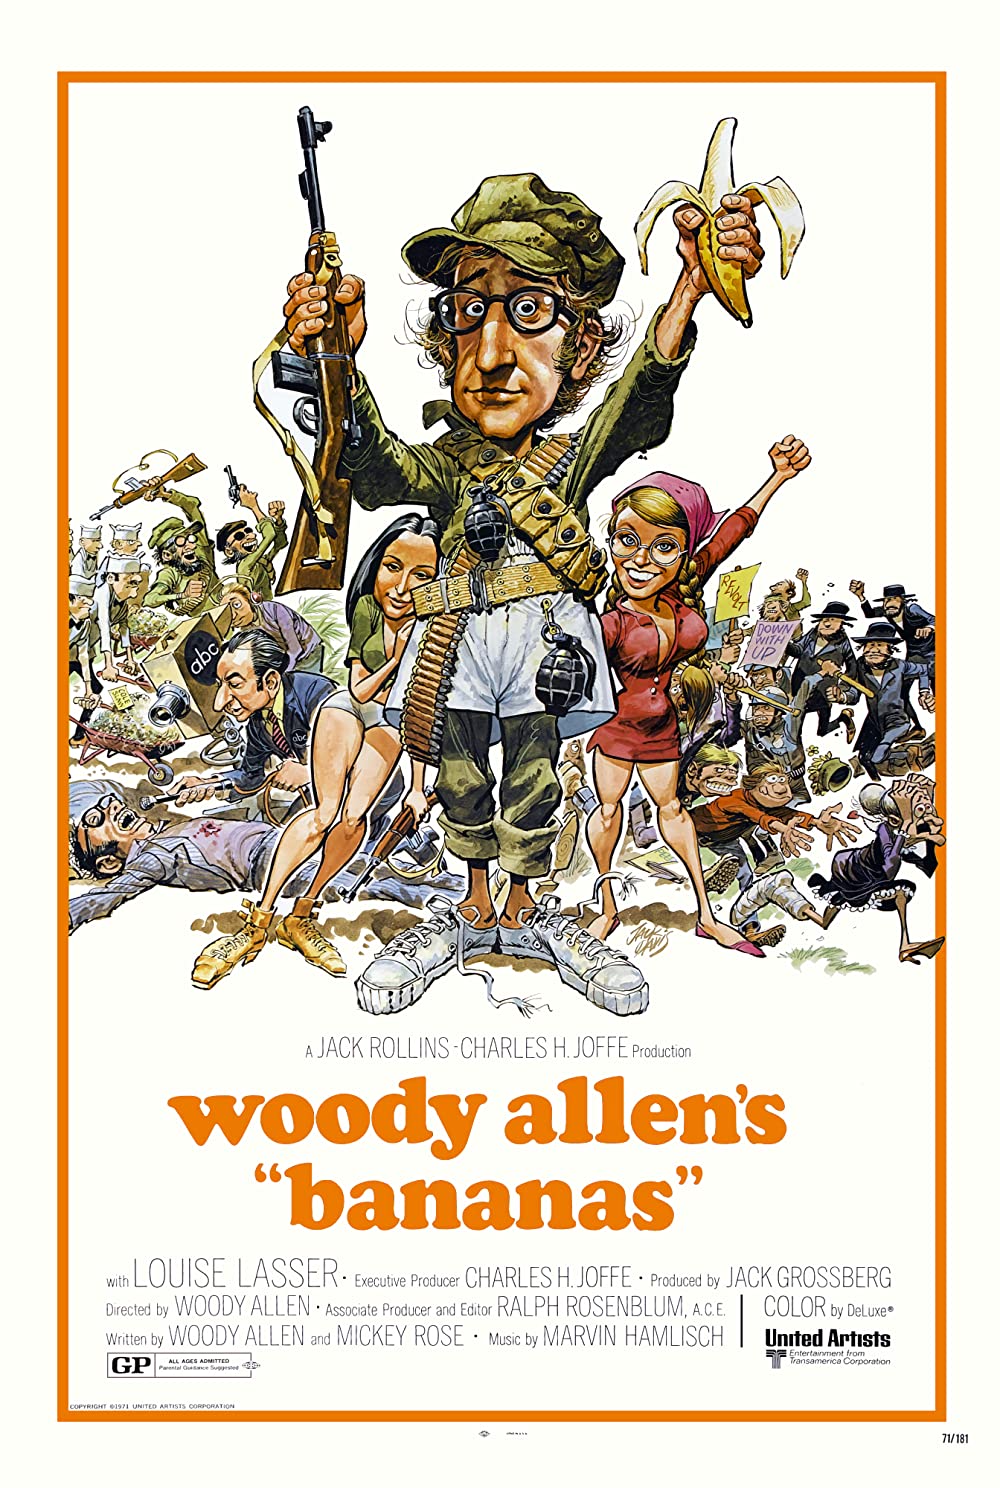 Filmbeschreibung zu Bananas (OV)